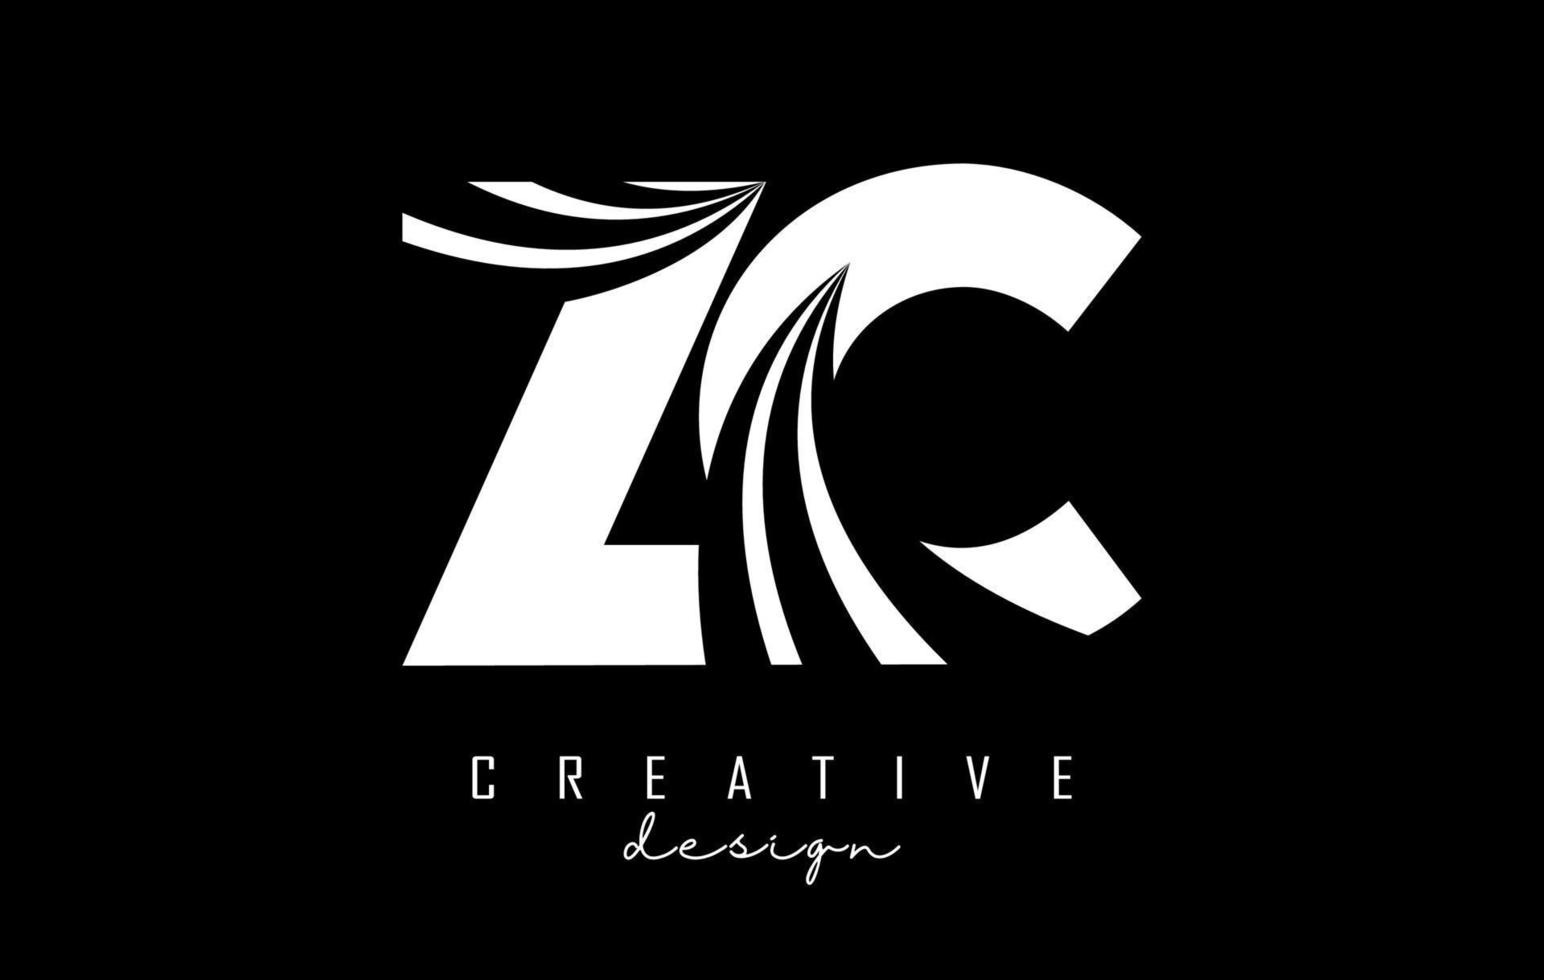 kreative weiße buchstaben zc zc-logo mit führenden linien und straßenkonzeptdesign. Buchstaben mit geometrischem Design. vektor